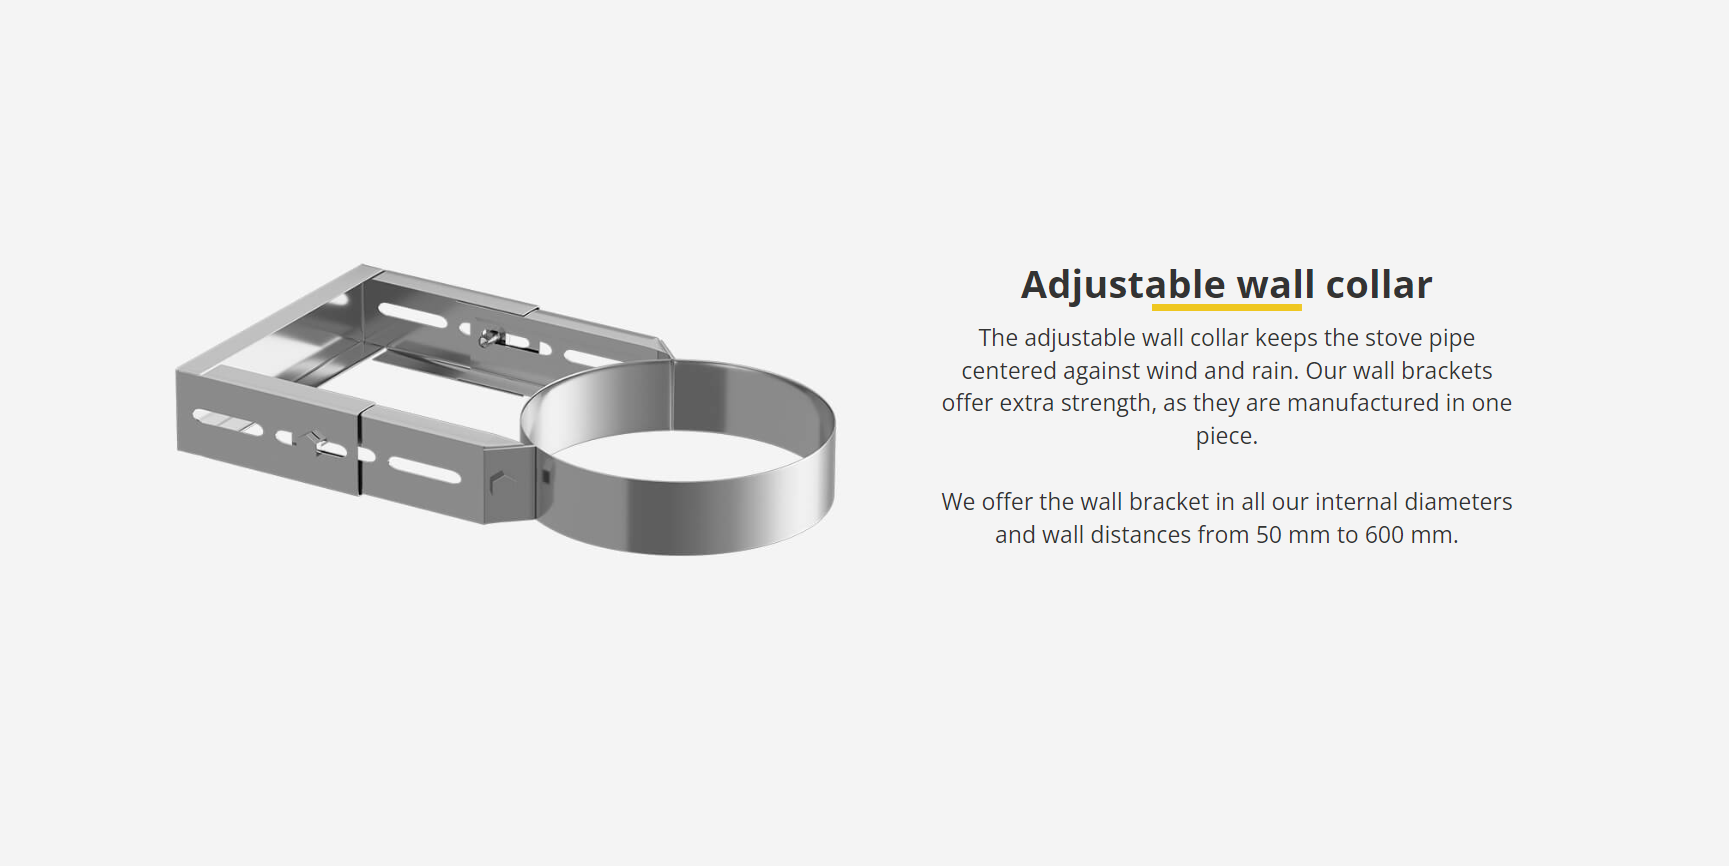 Adjustable wall collar